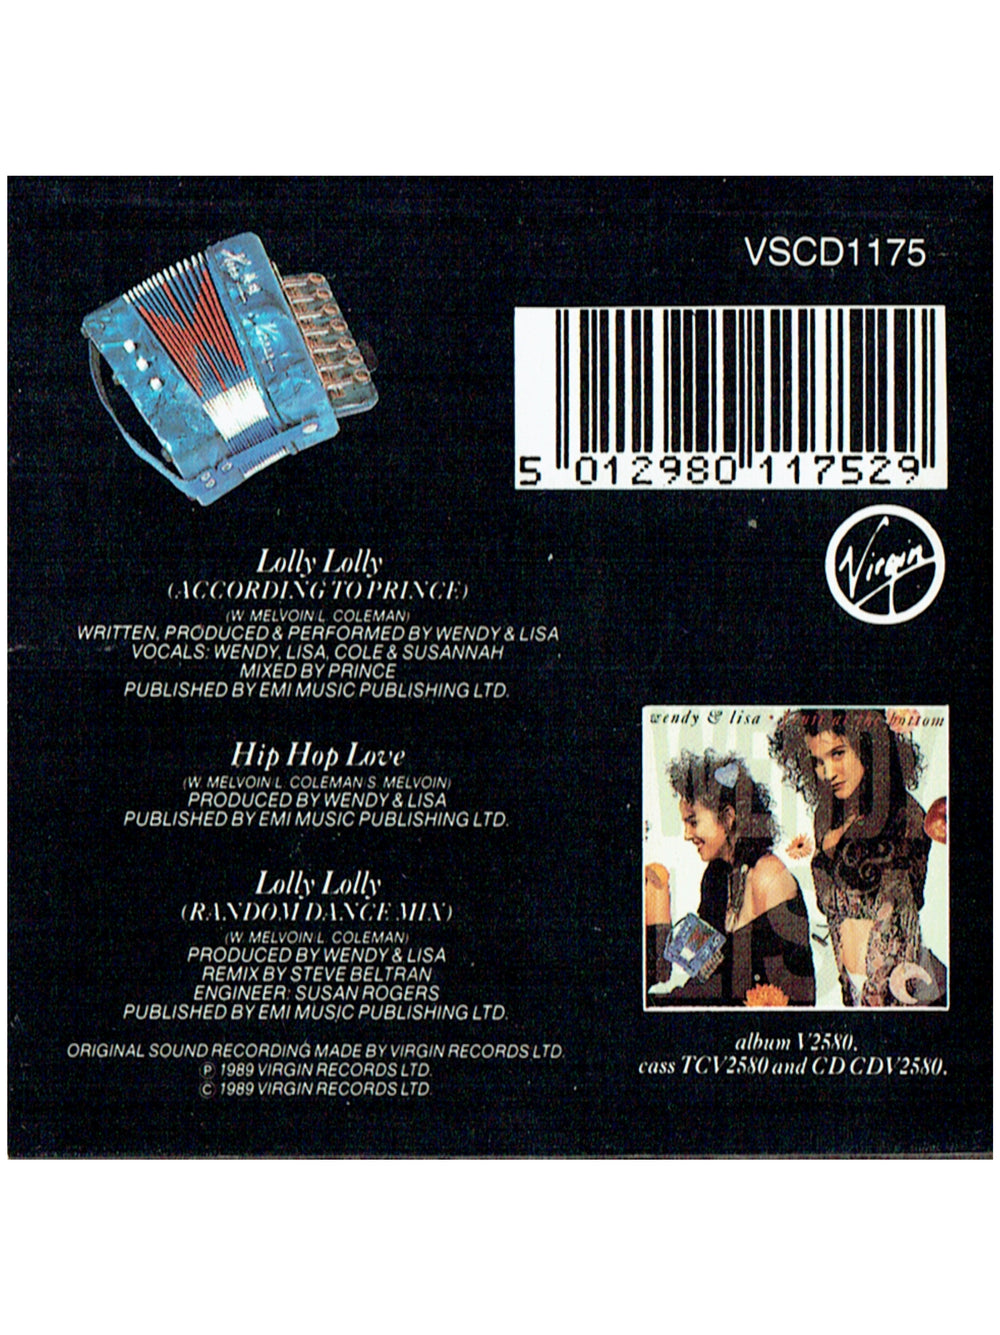 Prince – Wendy & Lisa Lolly Lolly CD Mini Single EU Preloved: 1989